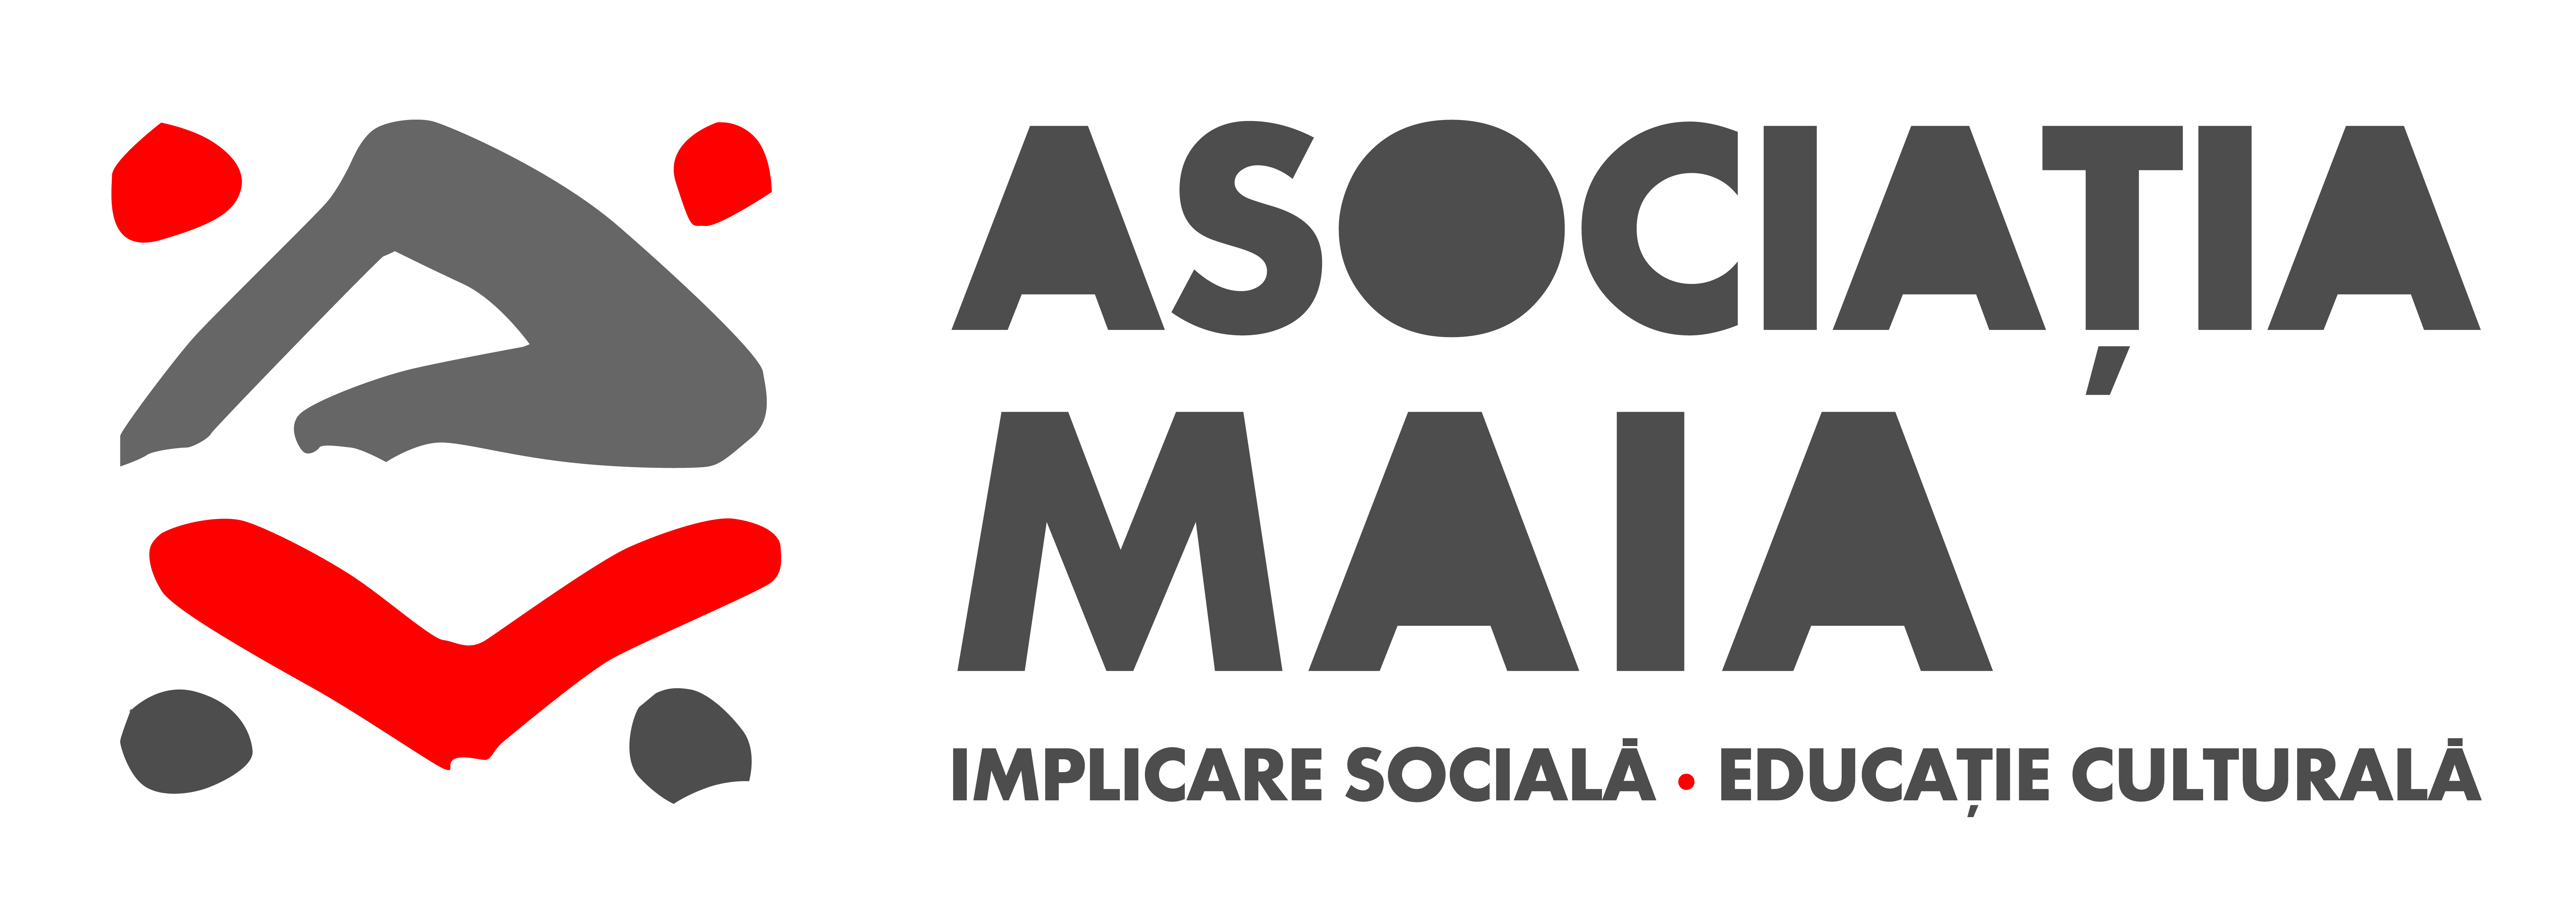 Asociatia MAIA logo